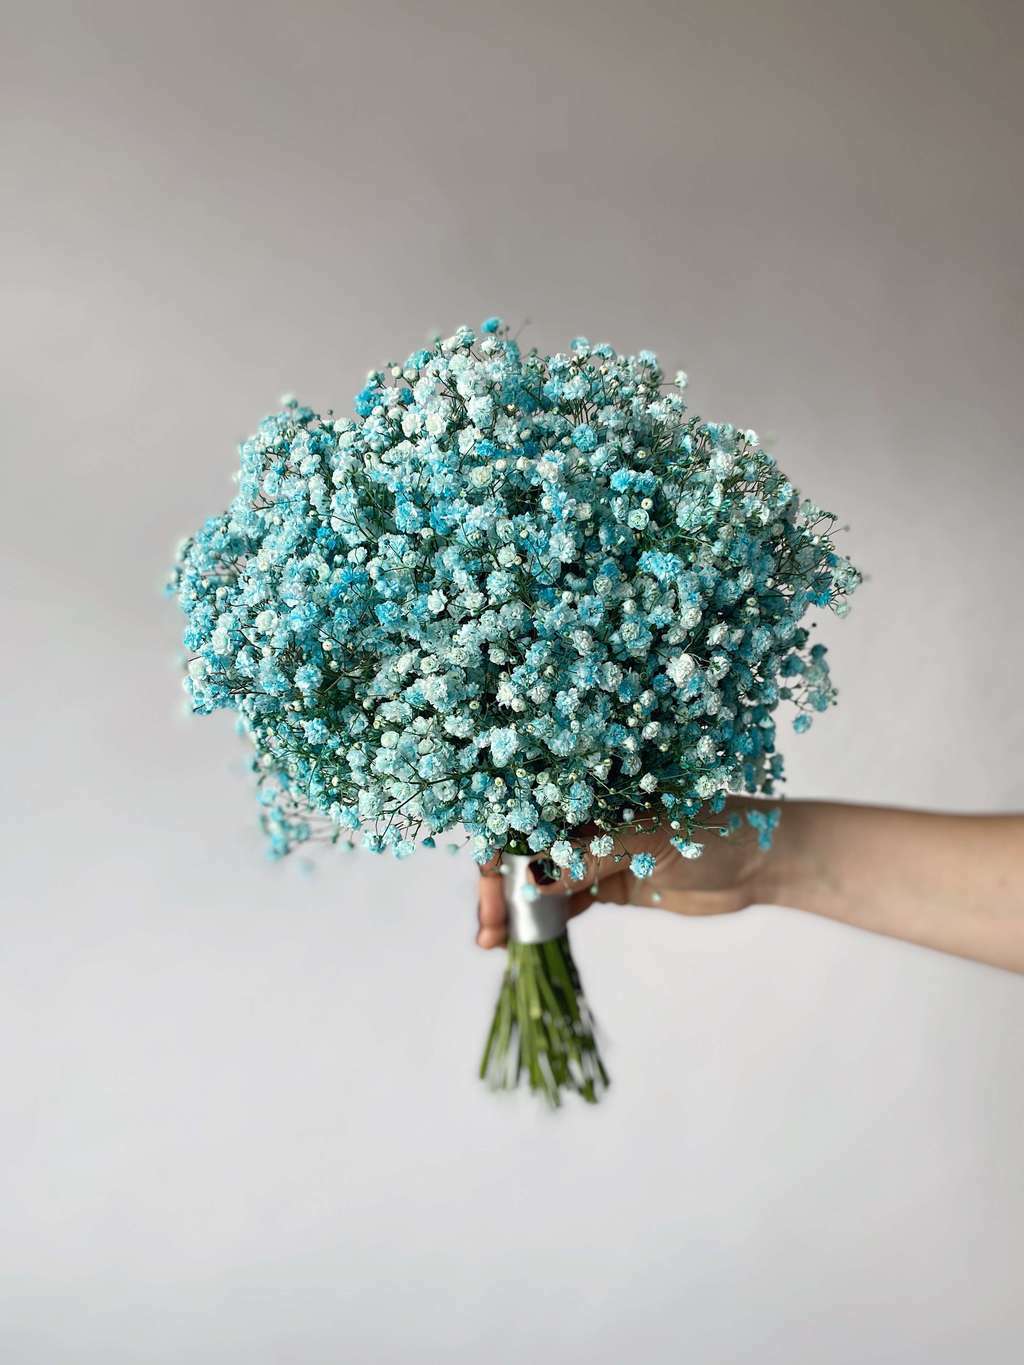 Купить букет невесты из голубой гипсофилы по доступной цене с доставкой в Москве и области в интернет-магазине Город Букетов